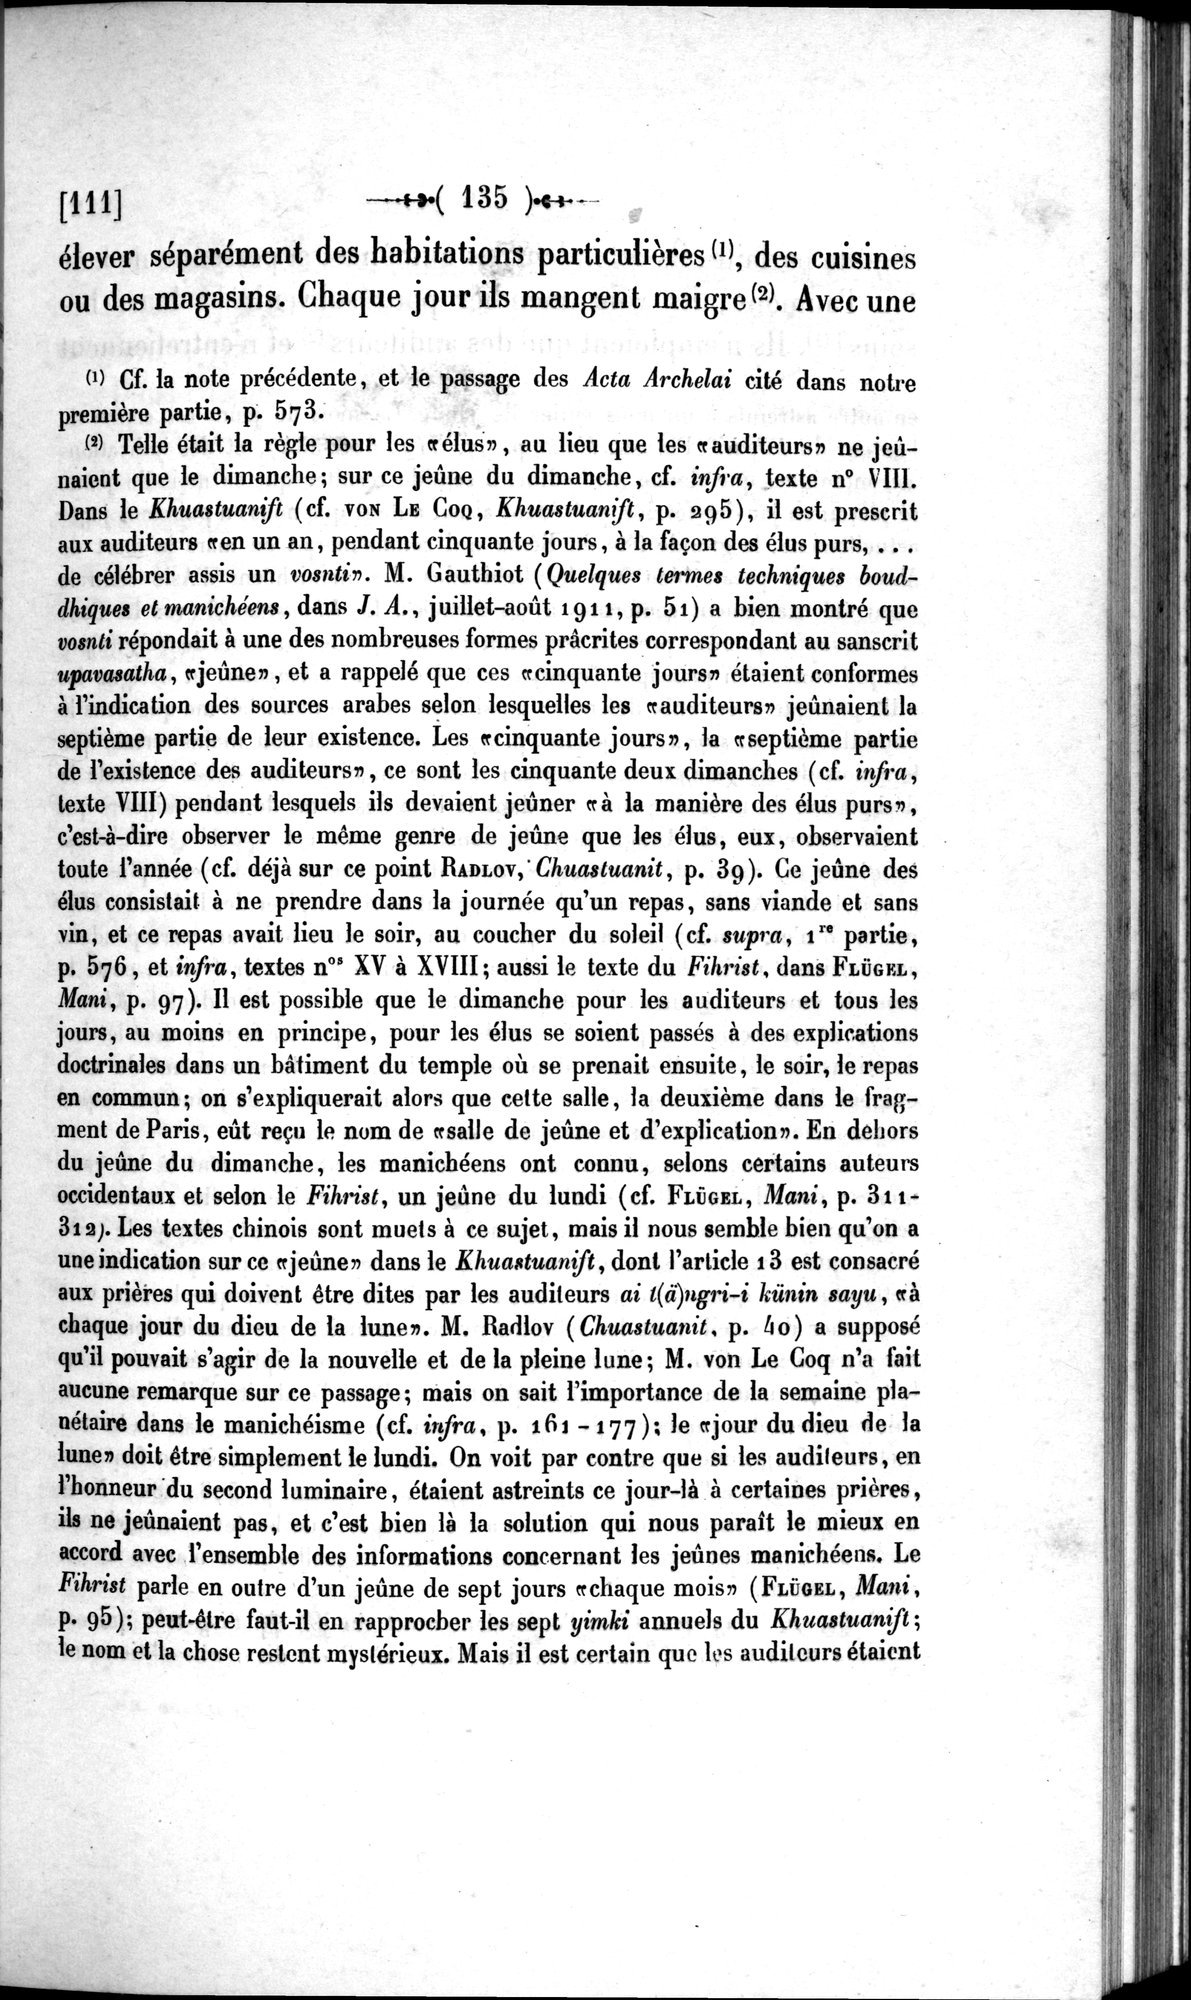 Un traité manichéen retrouvé en Chine : vol.1 / Page 145 (Grayscale High Resolution Image)